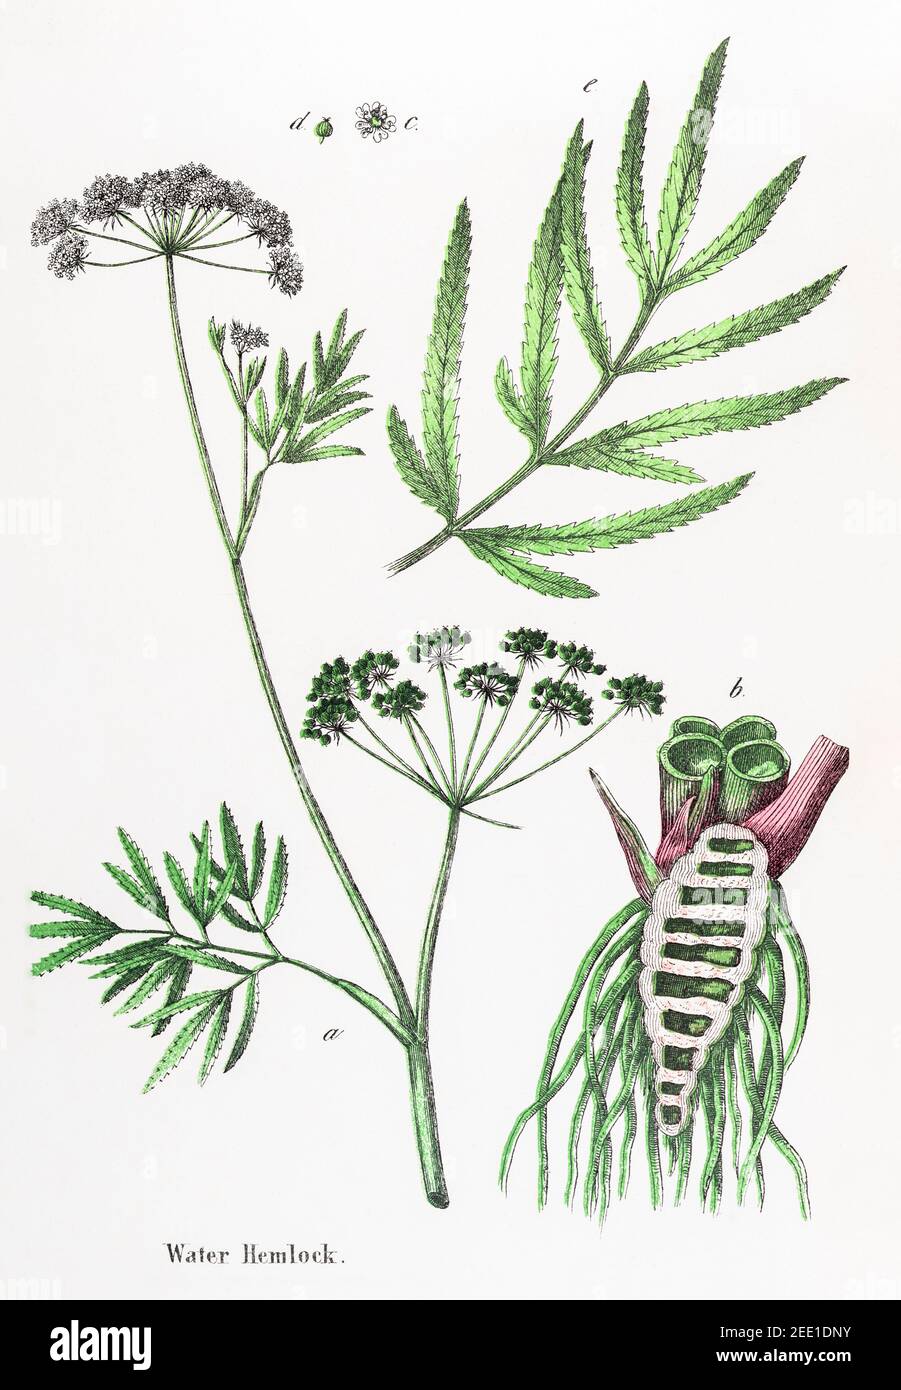 Digital restauriert 19th c. Viktorianische botanische Illustration von giftigem Wasser Hemlock, Cowbane / Cicuta virosa. Informationen zur Quelle finden Sie in den Hinweisen. Stockfoto